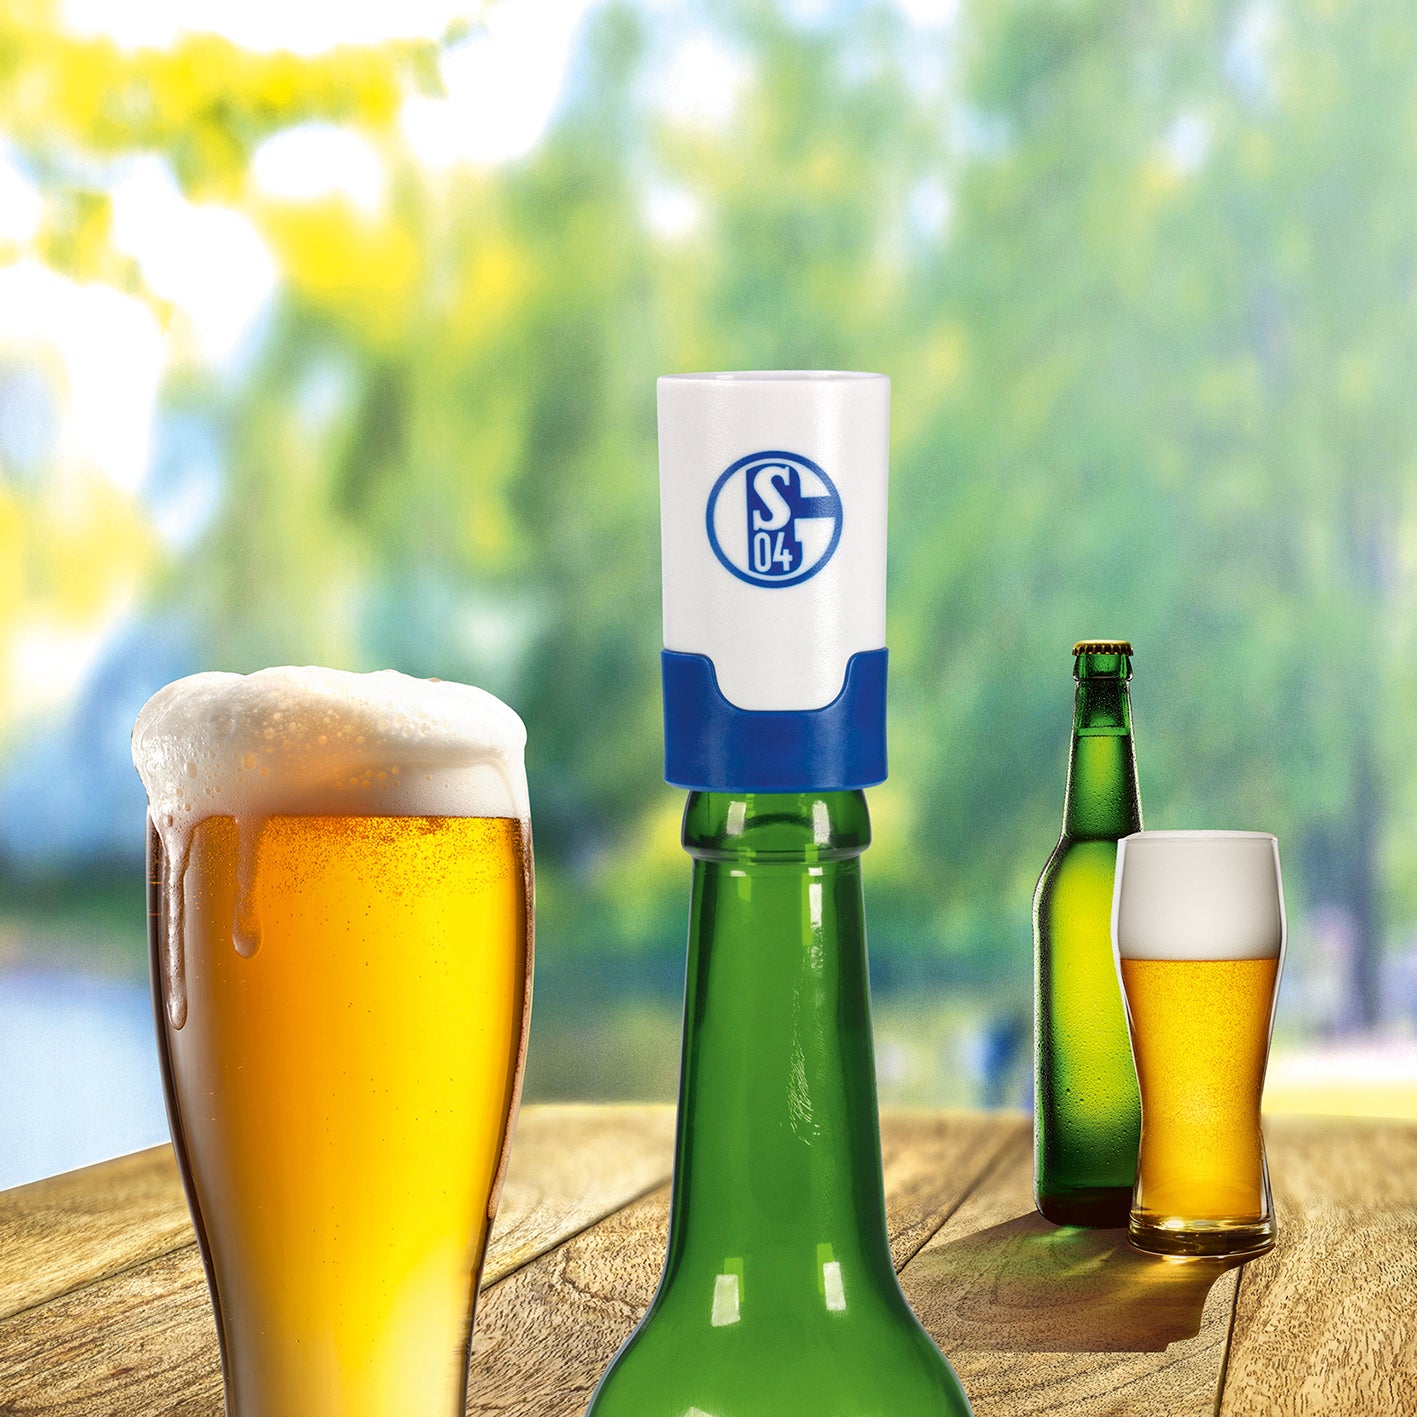 Bier-Aufbereiter im FC Schalke 04-Design